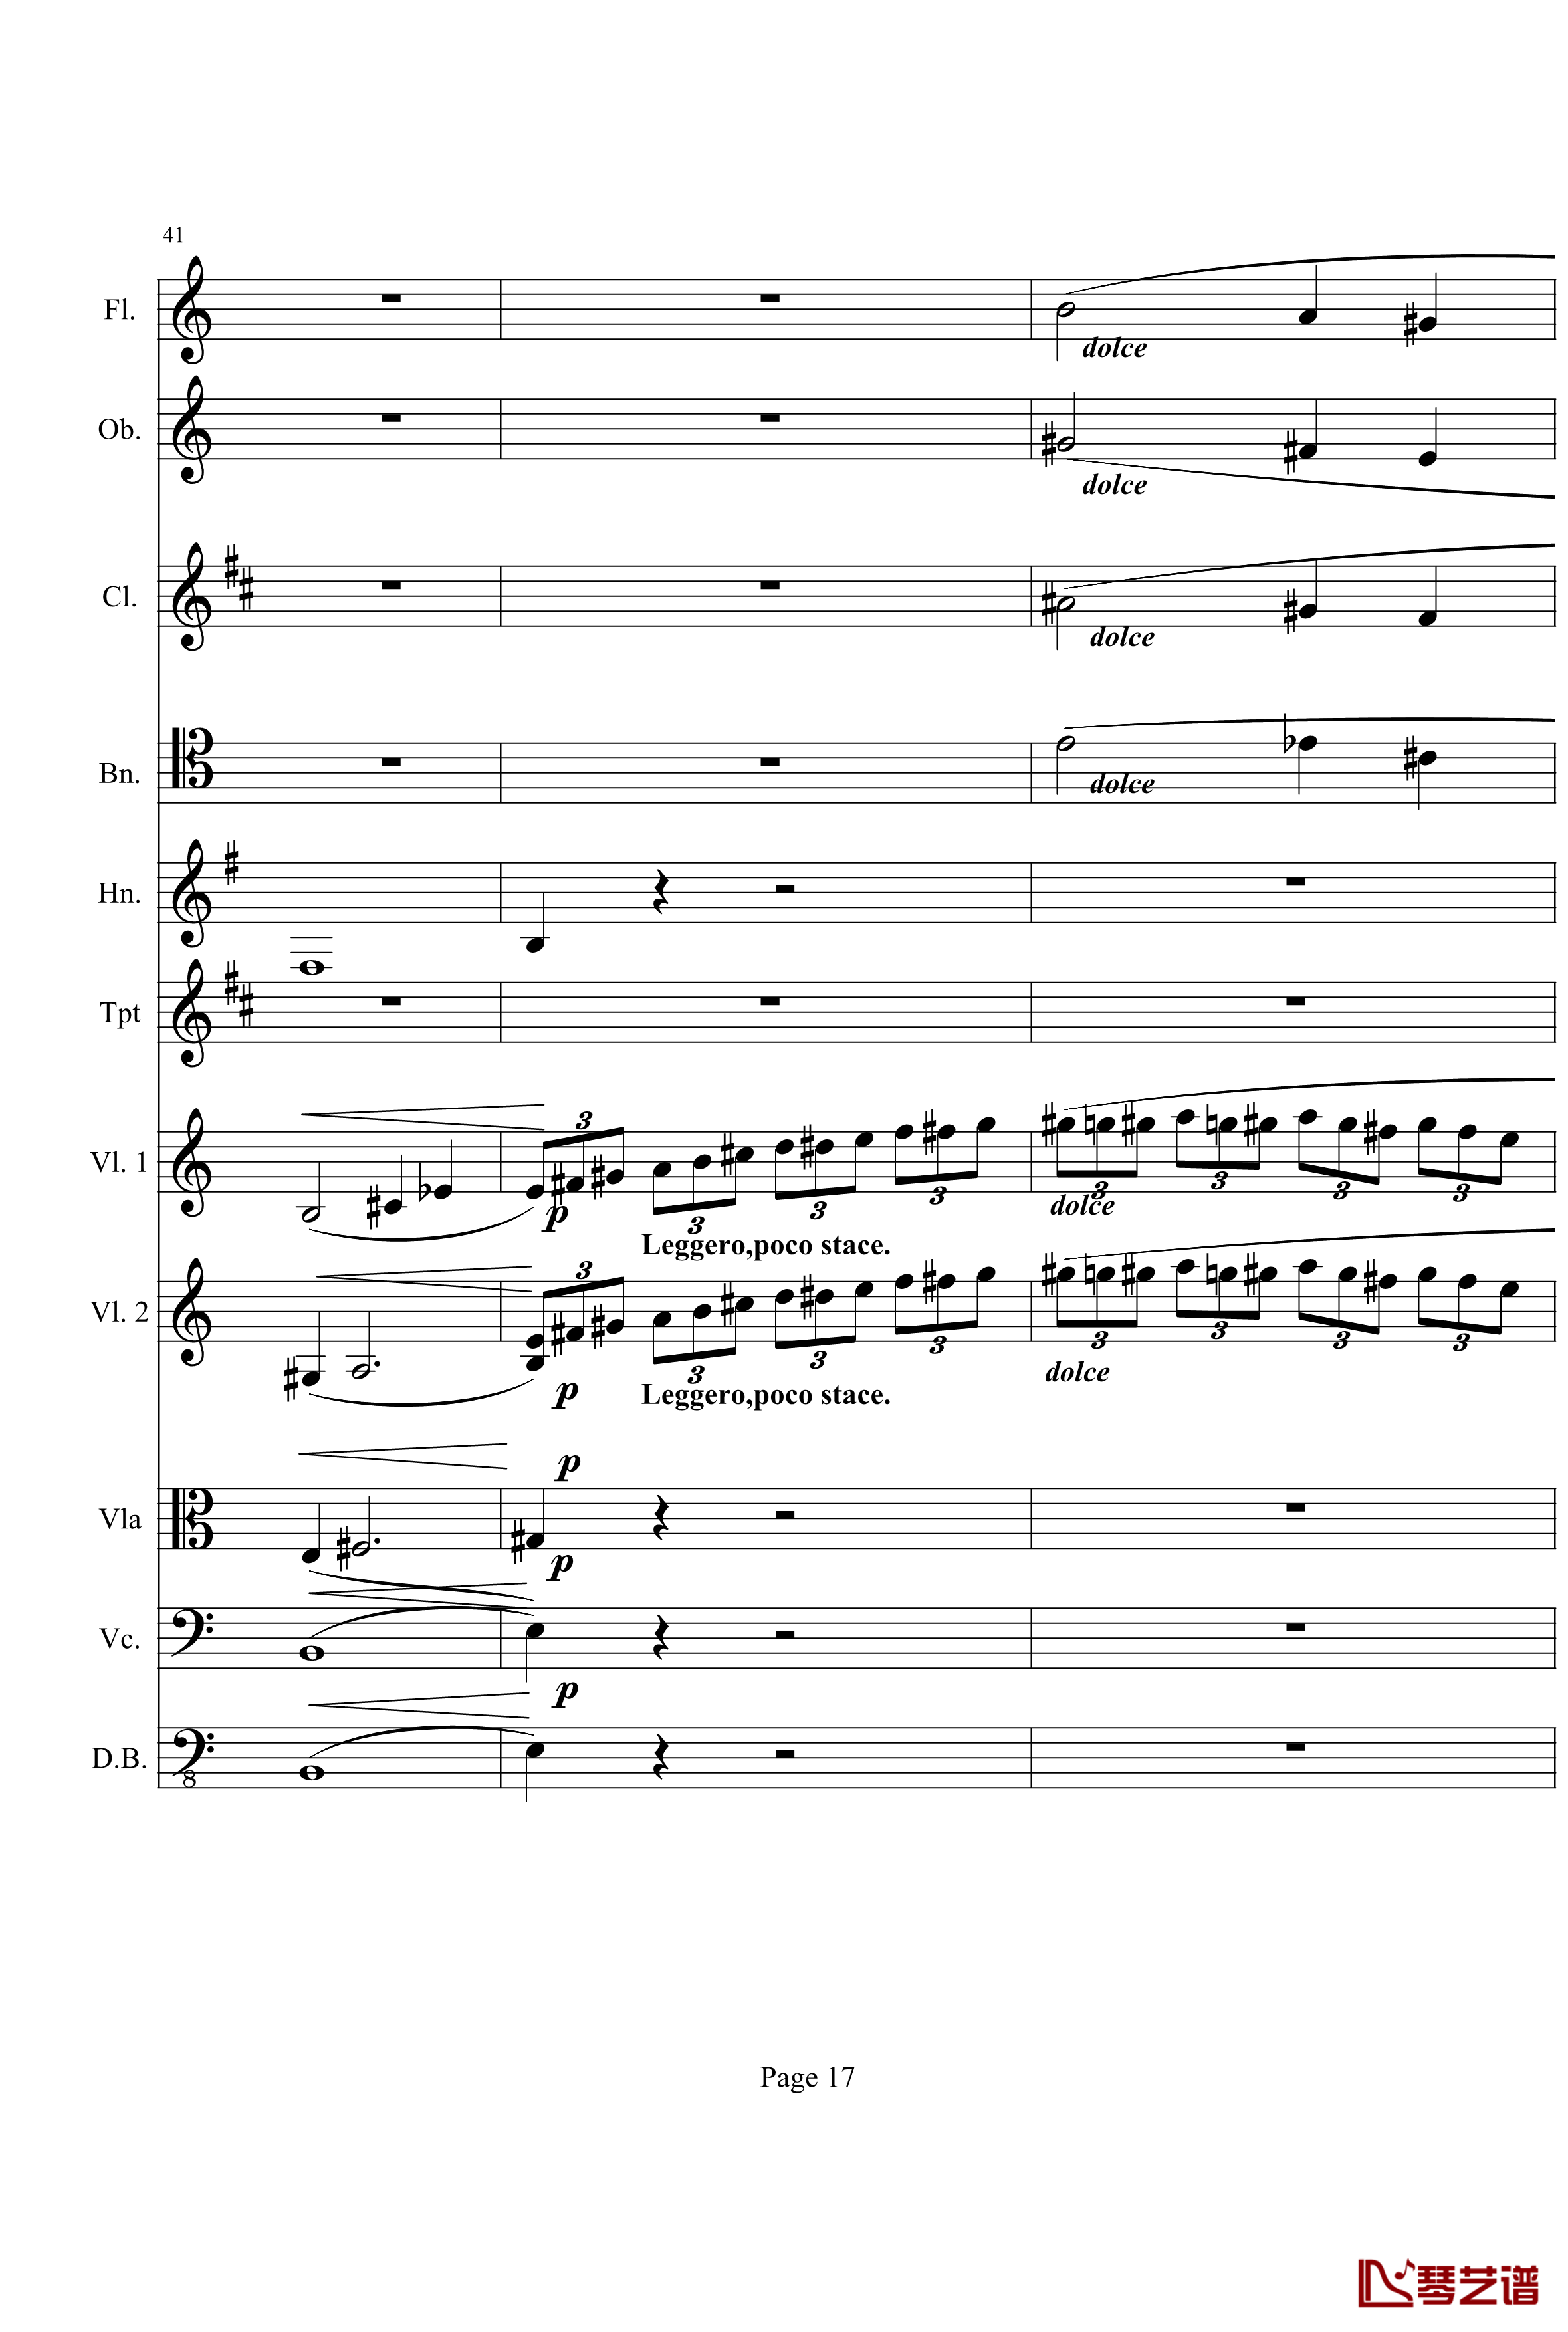 奏鸣曲之交响钢琴谱-第21首-Ⅰ-贝多芬-beethoven17